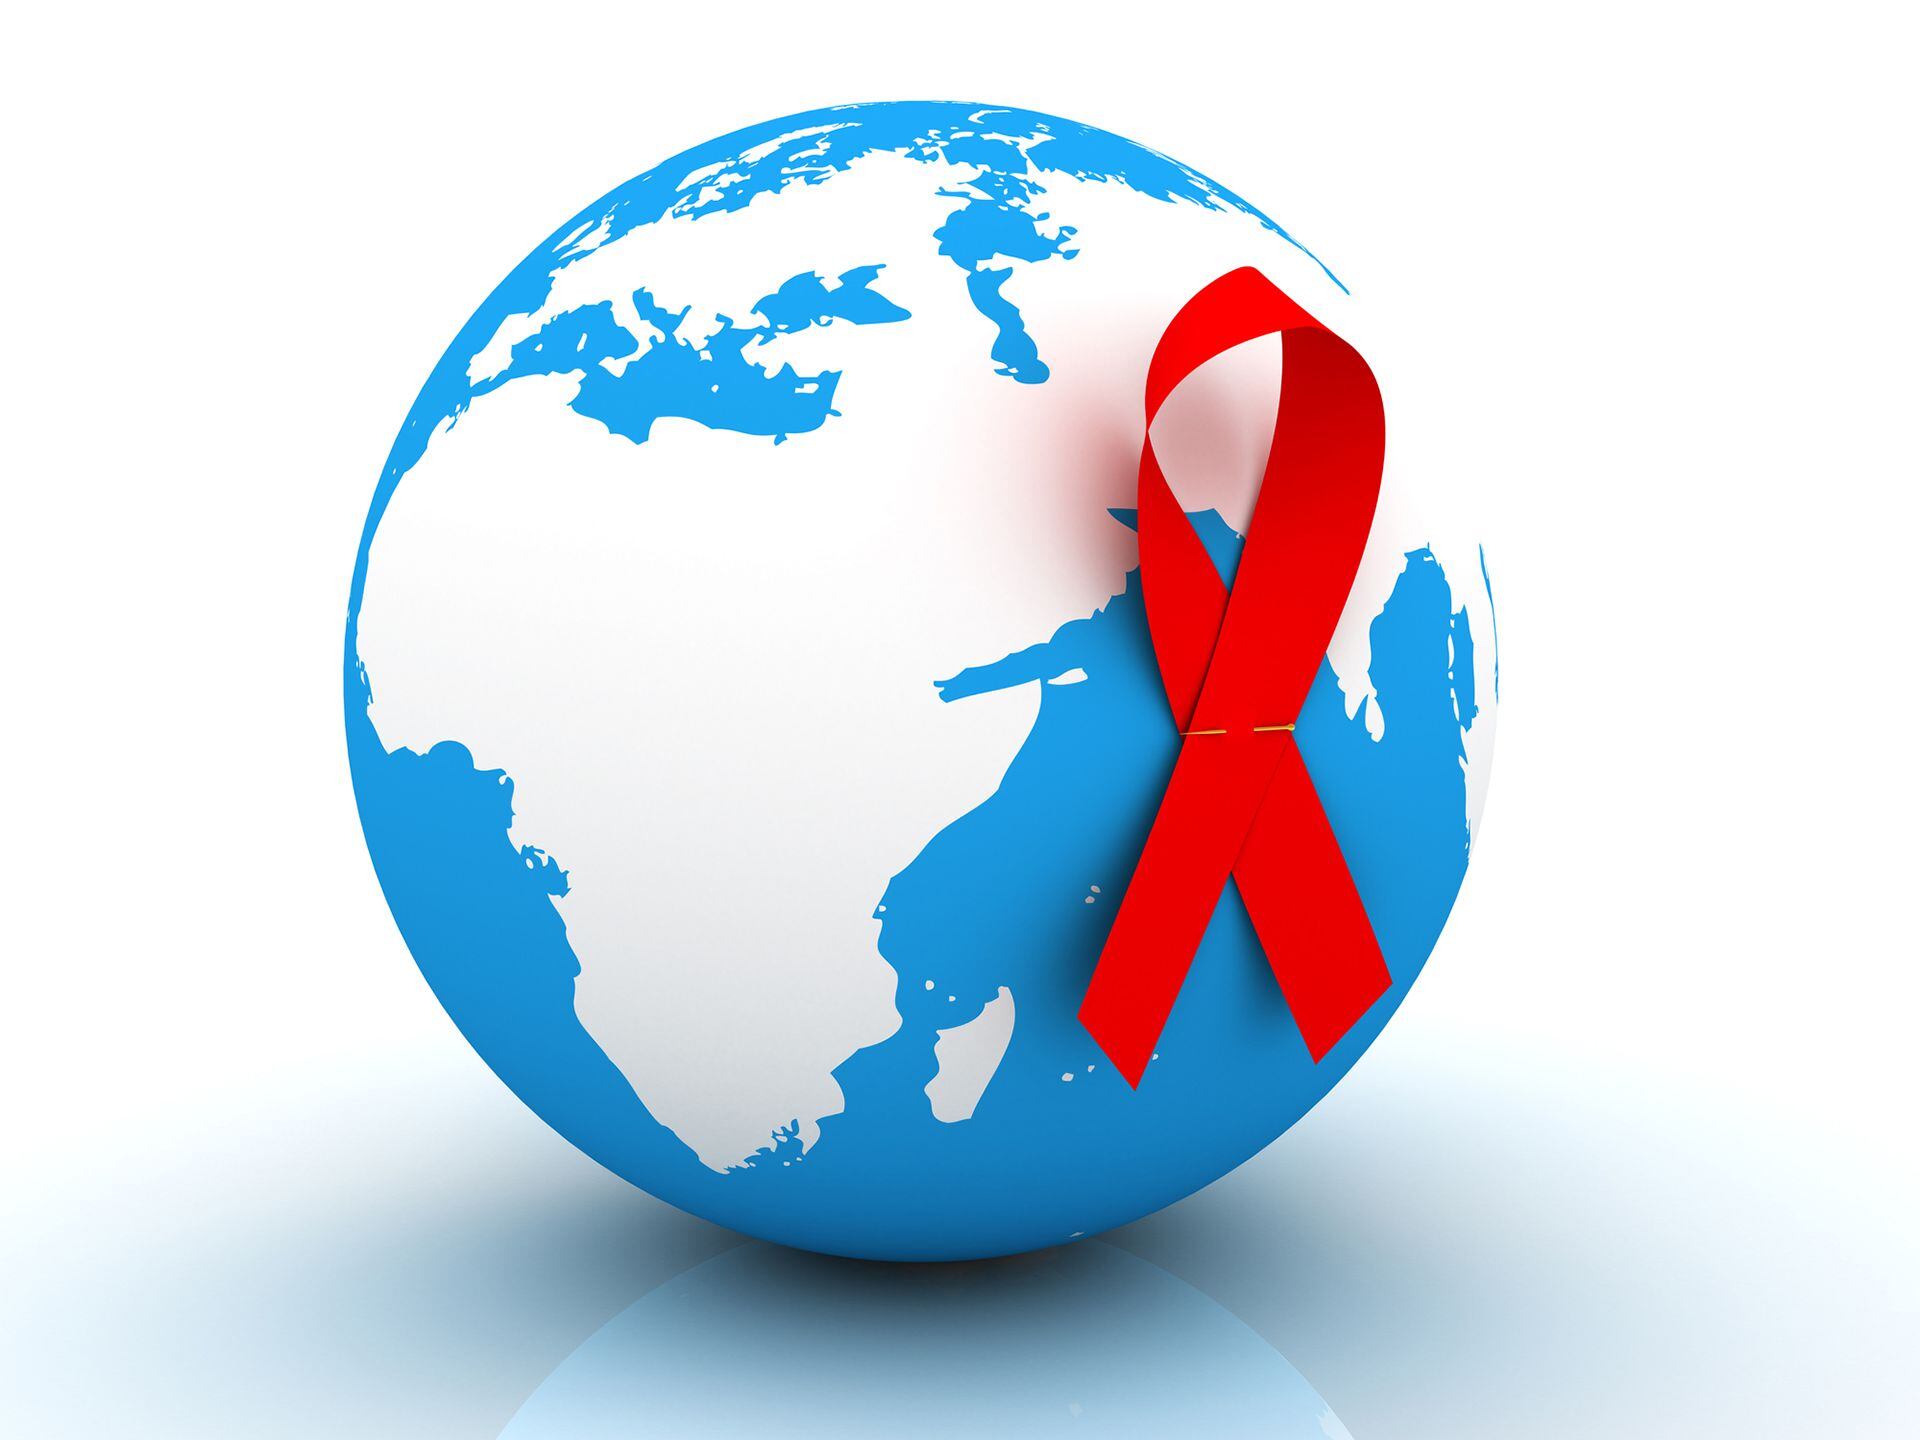 Según Onusida, 39 millones de personas viven en el mundo con VIH, de las cuales la mayoría (53%) son mujeres y niñas